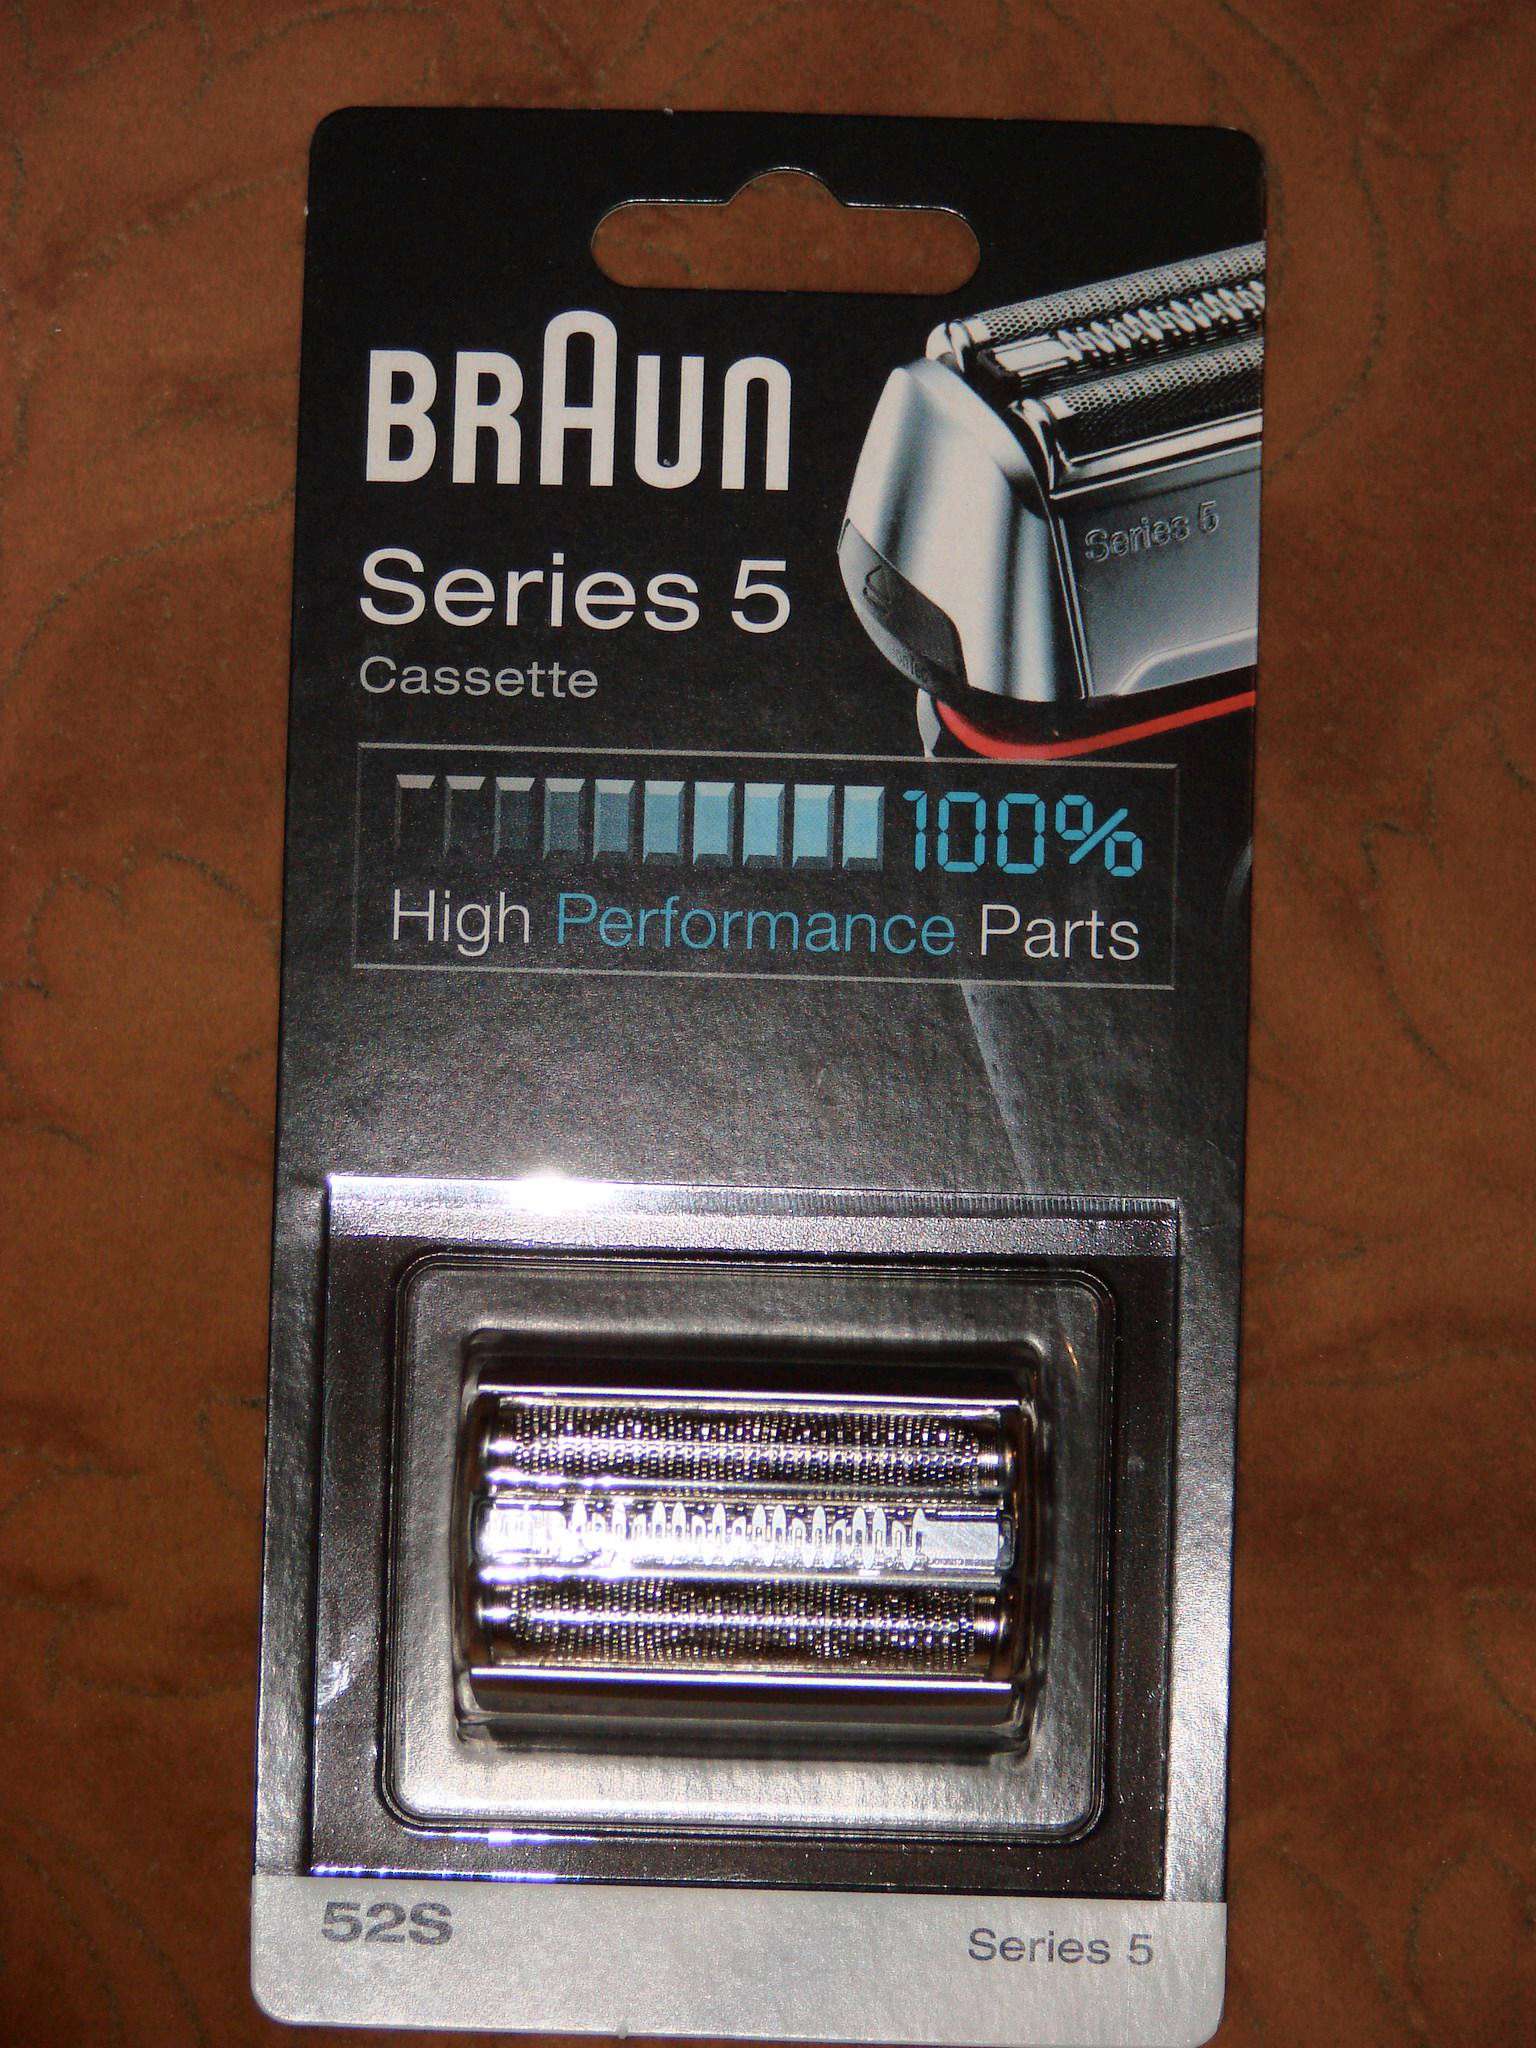 Купить сетку для браун 5. Сетка и режущий блок для электробритвы Braun 52s. Сетка и режущий блок Браун Series 1. Сетка + режущий блок Braun 52s. Кассета для бритвы Браун 52s.